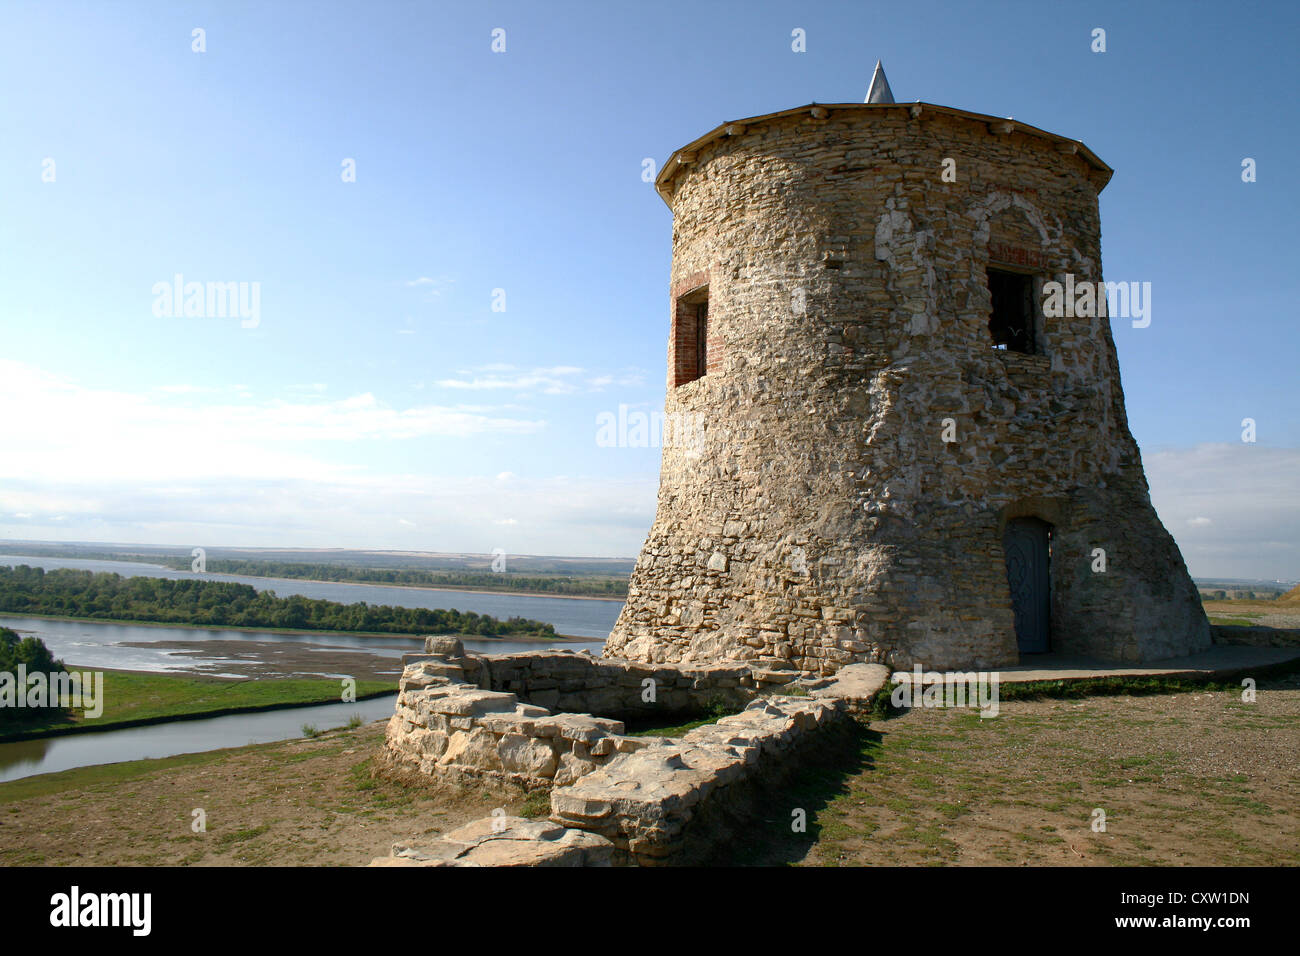 Turm einer alten Festung (des Teufels Stadt) auf einem hohen Hügel, Elabuga, Russland Stockfoto